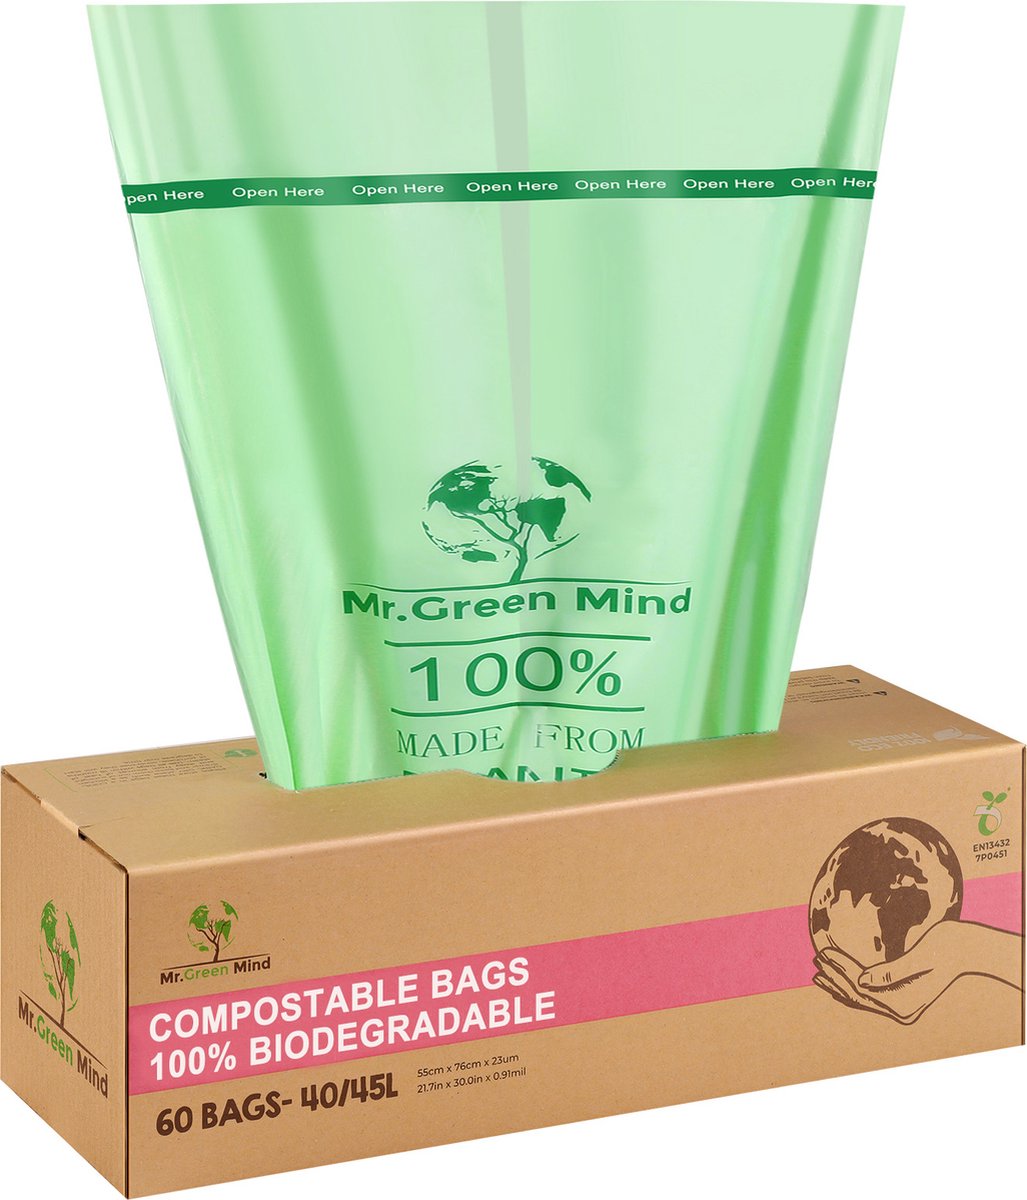 Petit sac poubelle compostable bionickel able, mini sac poubelle